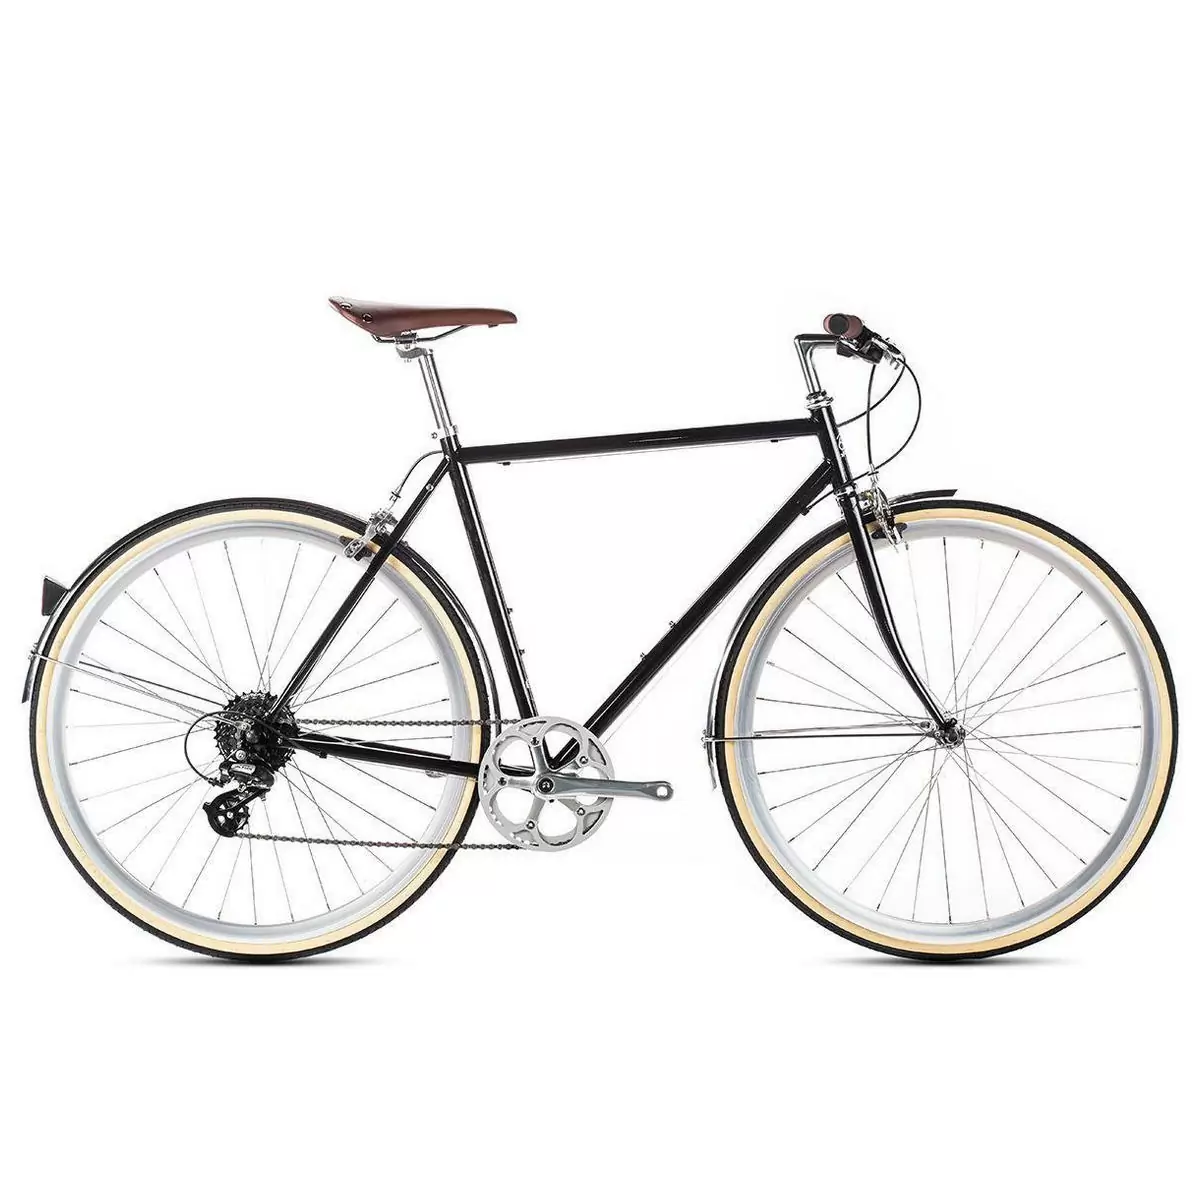 Bicicleta urbana ODYSSEY 8spd Delano preta média 54cm - image